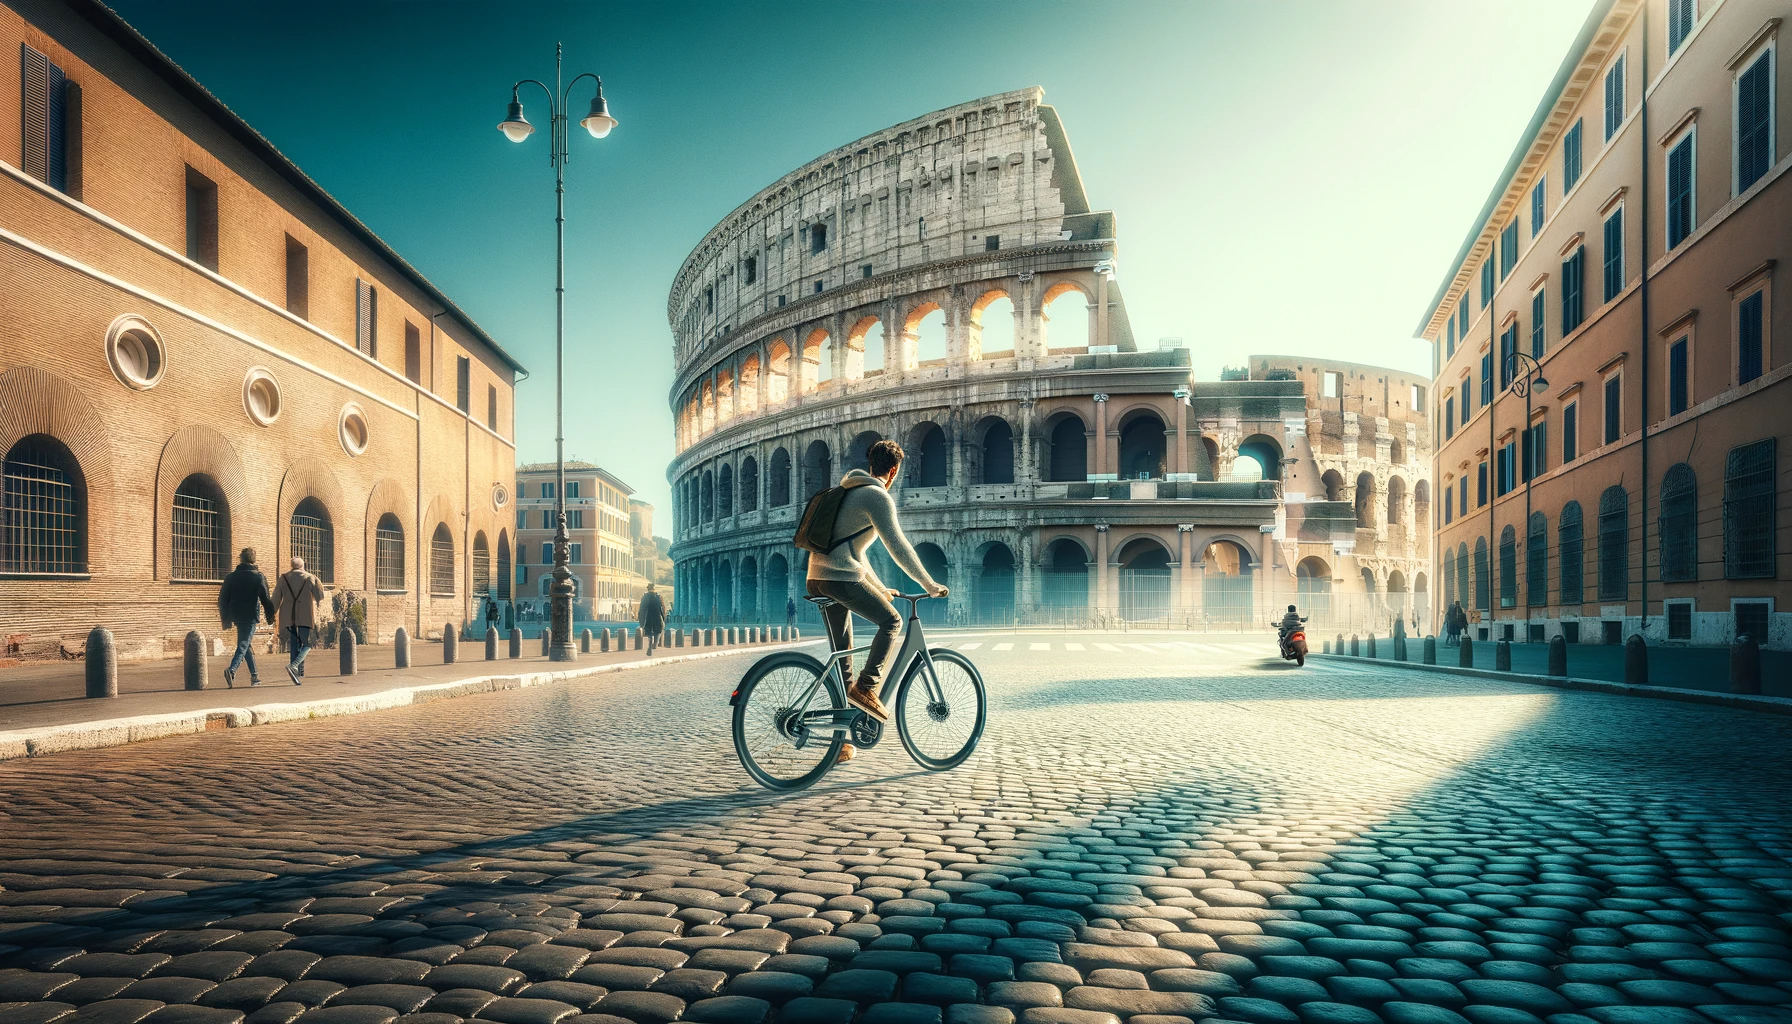 Location de Vélo à Rome avec le Colisée en Arrière-Plan